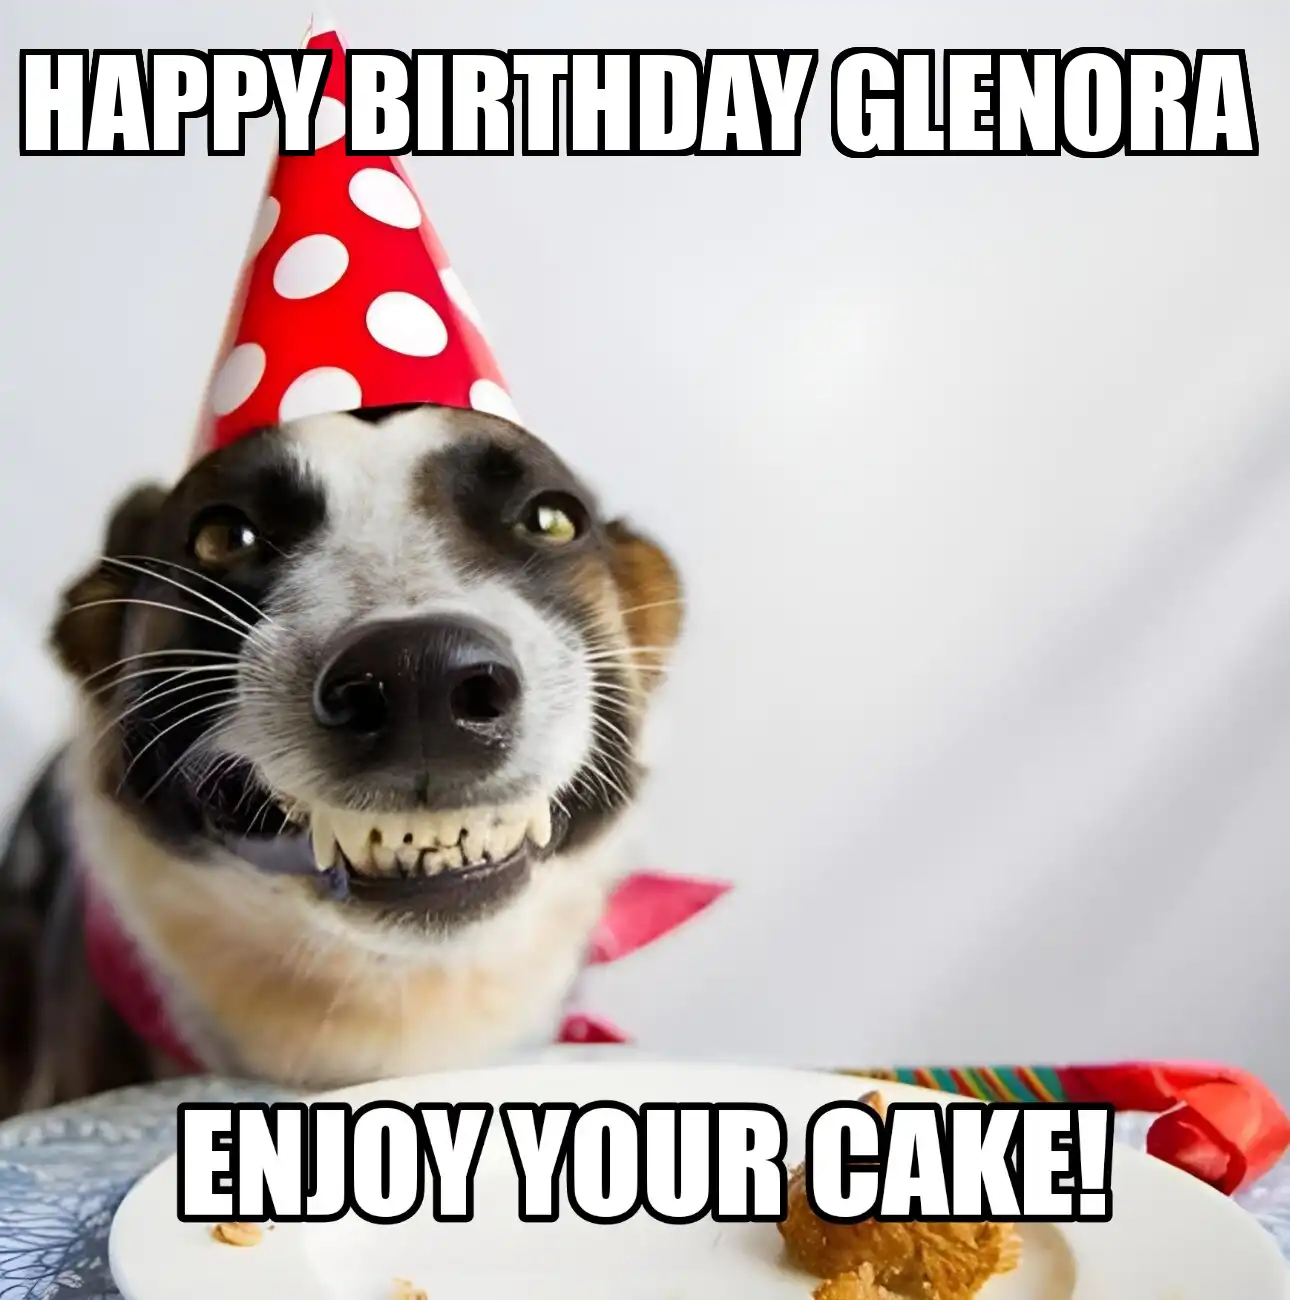 Happy Birthday Glenora Enjoy Your Cake Dog Meme